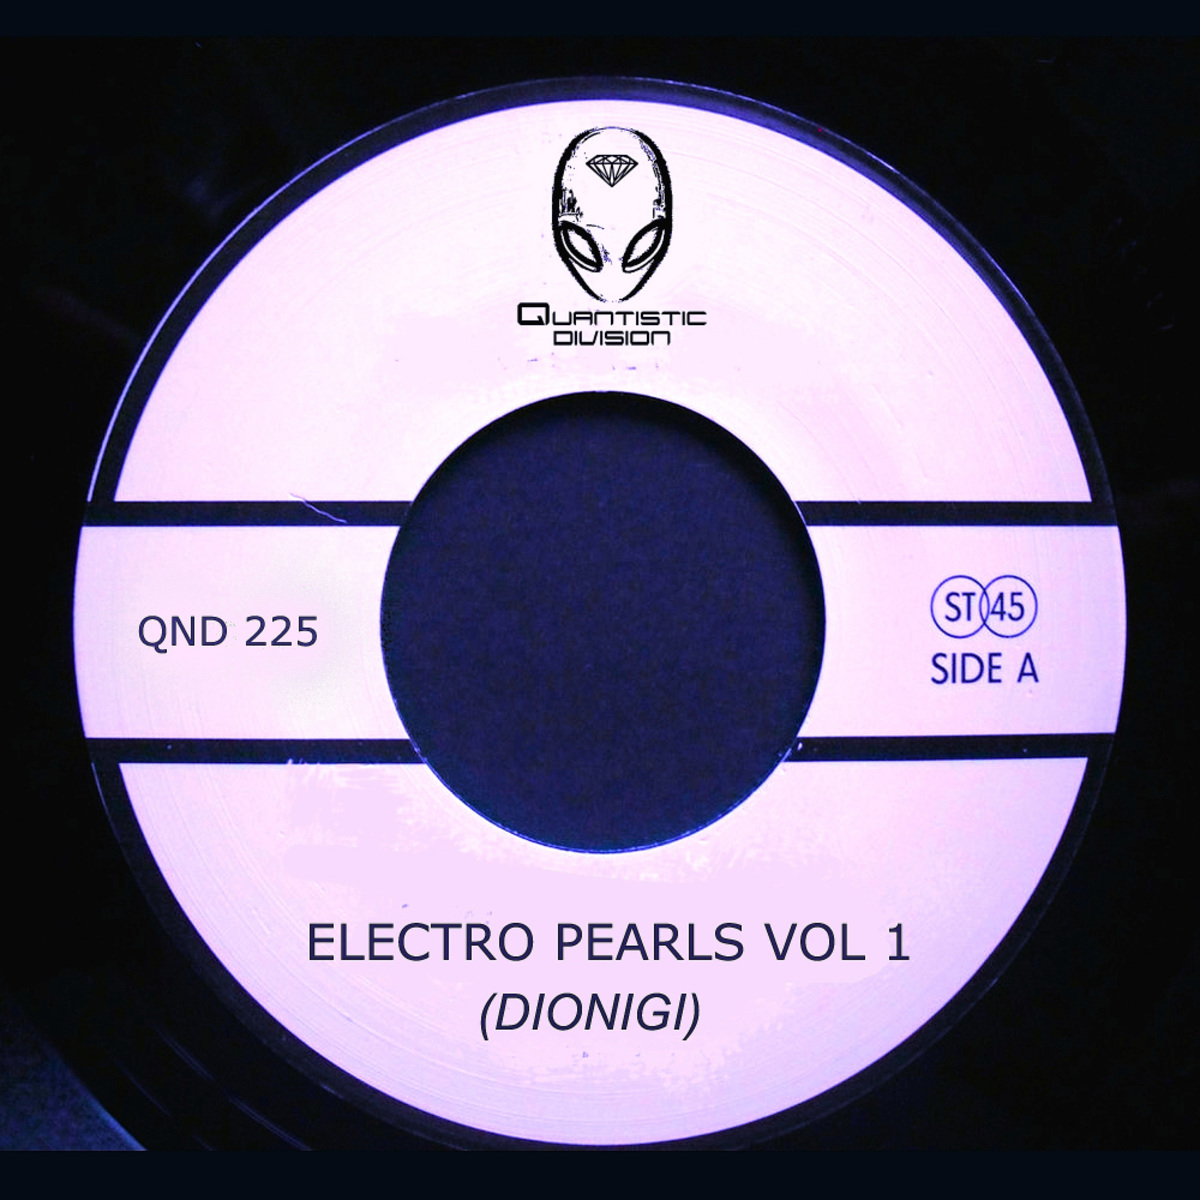 Dionigi - Electro Pearls, Vol. 1 / Quantistic Division